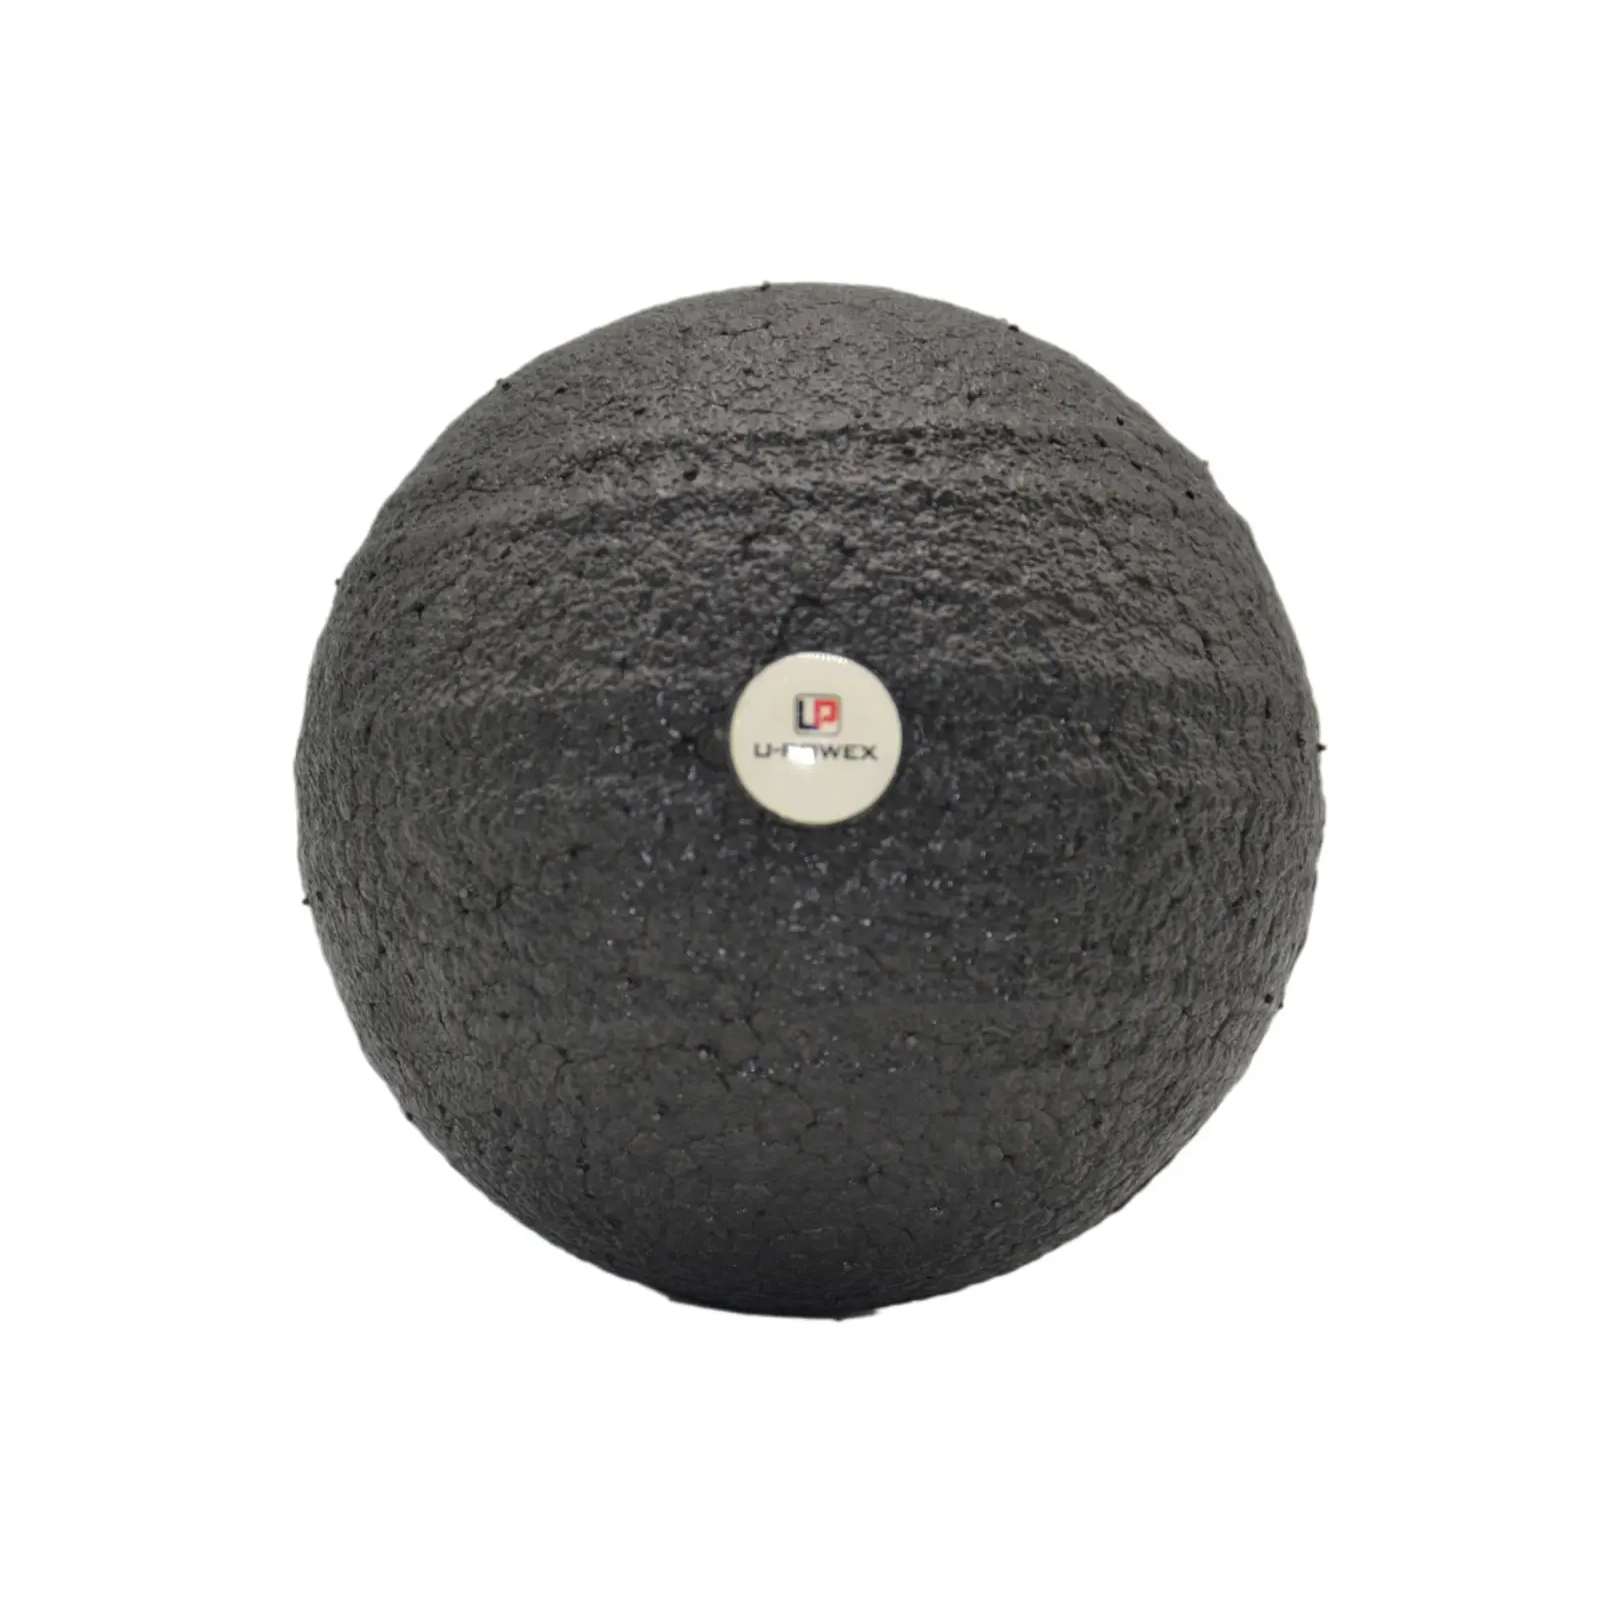 Массажный мяч U-Powex Epp foam ball d8cm Black (UP_1003_Ball_D8cm) изображение 2